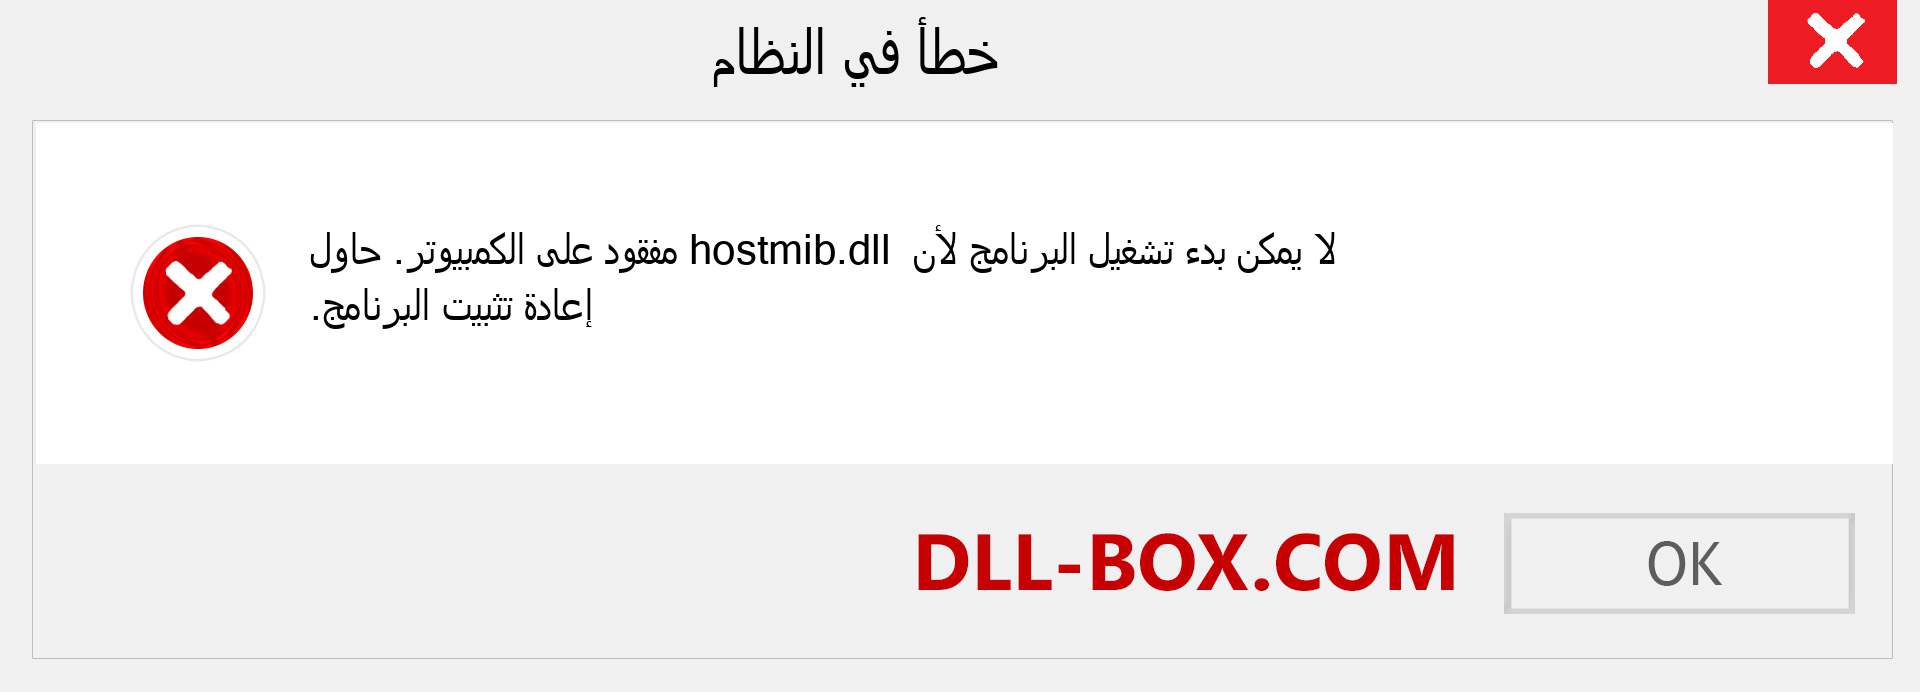 ملف hostmib.dll مفقود ؟. التنزيل لنظام التشغيل Windows 7 و 8 و 10 - إصلاح خطأ hostmib dll المفقود على Windows والصور والصور